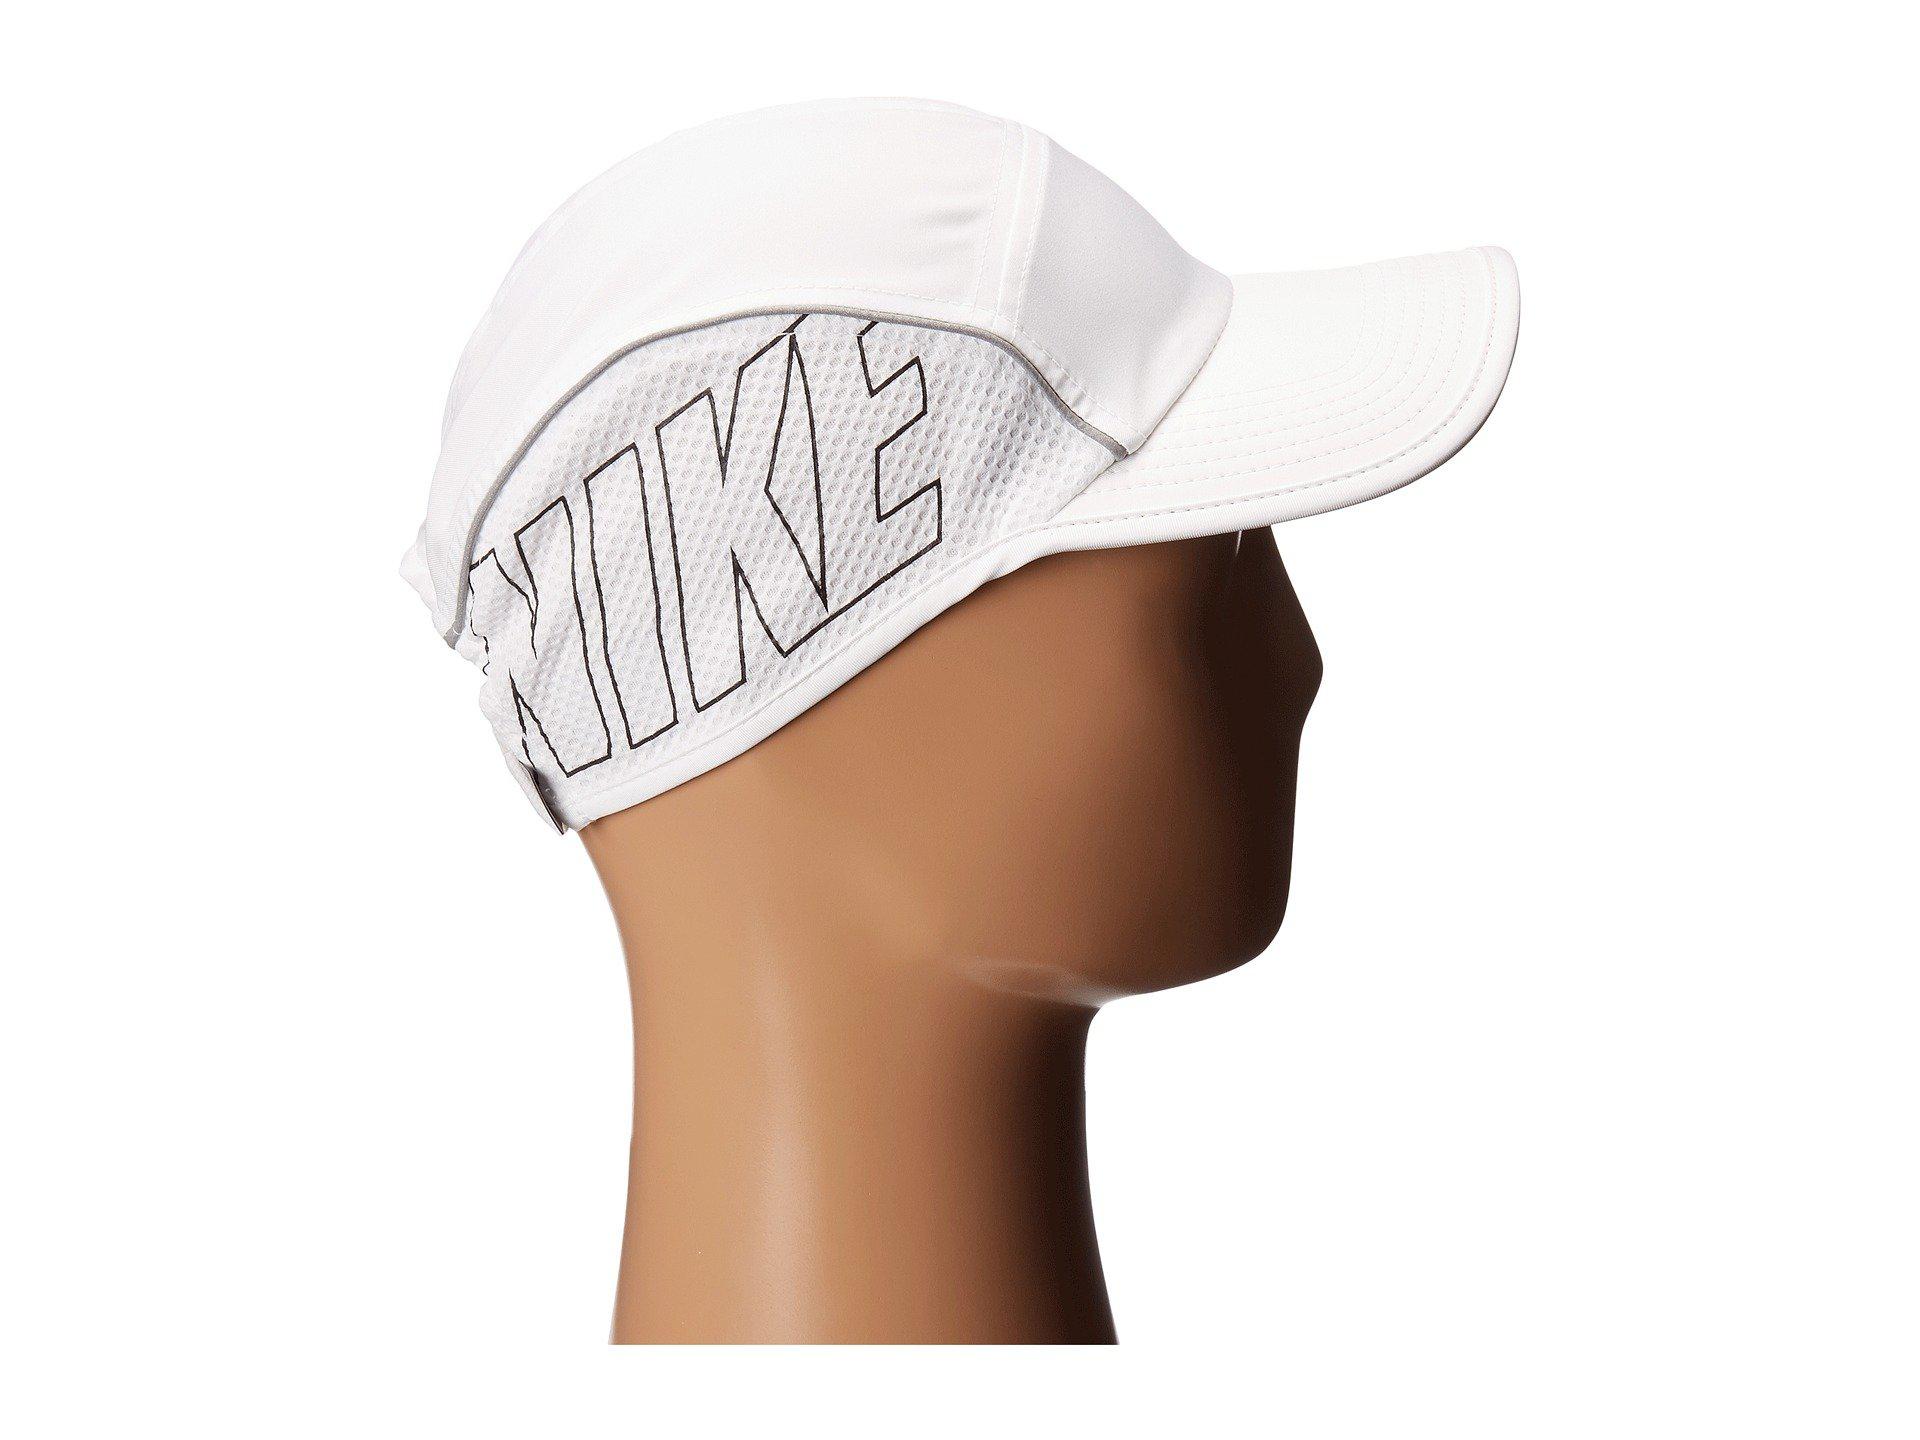 Nike Synthetic Aerobill Aw84 Running Cap in White/White/Black (White) for  Men | Lyst